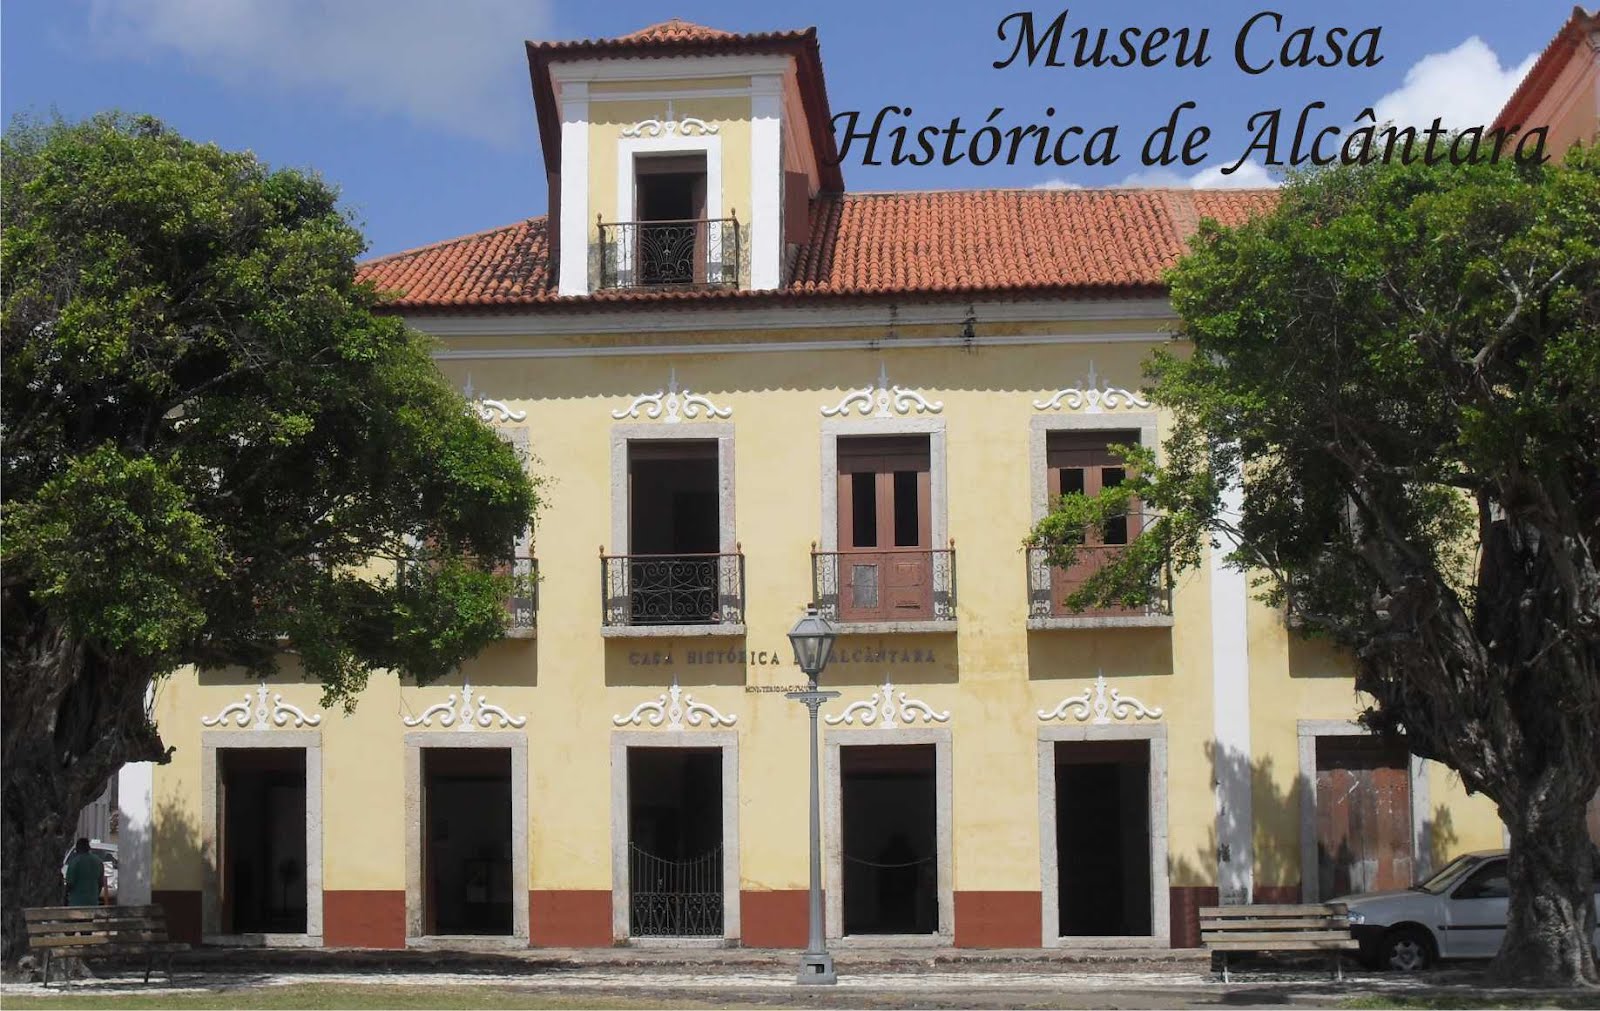 Museu Casa Histórica de Alcântara